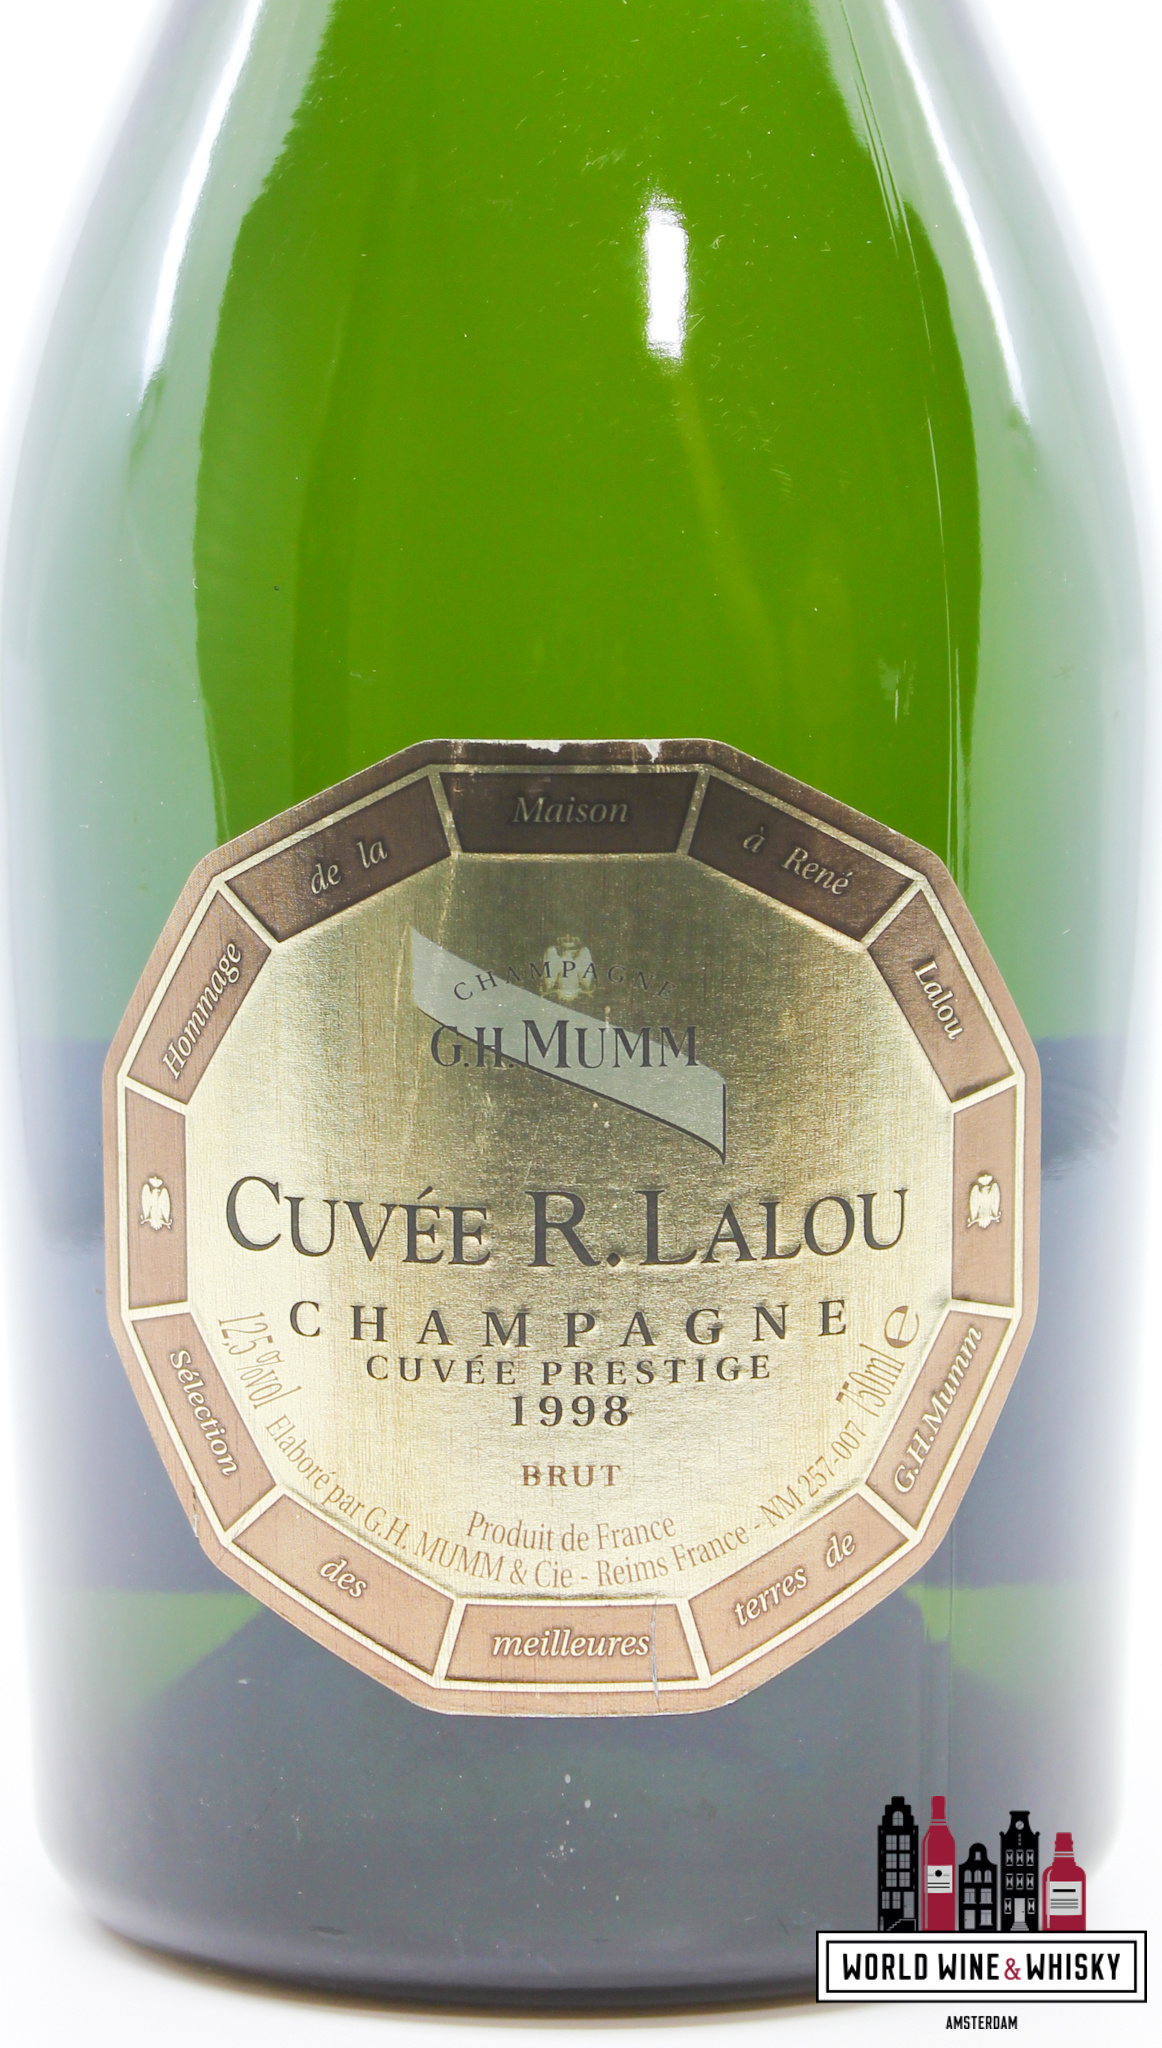 G.H. Mumm G.H. Mumm 1998 - Cuvée R. Lalou - Champagne Cuvée Prestige Brut